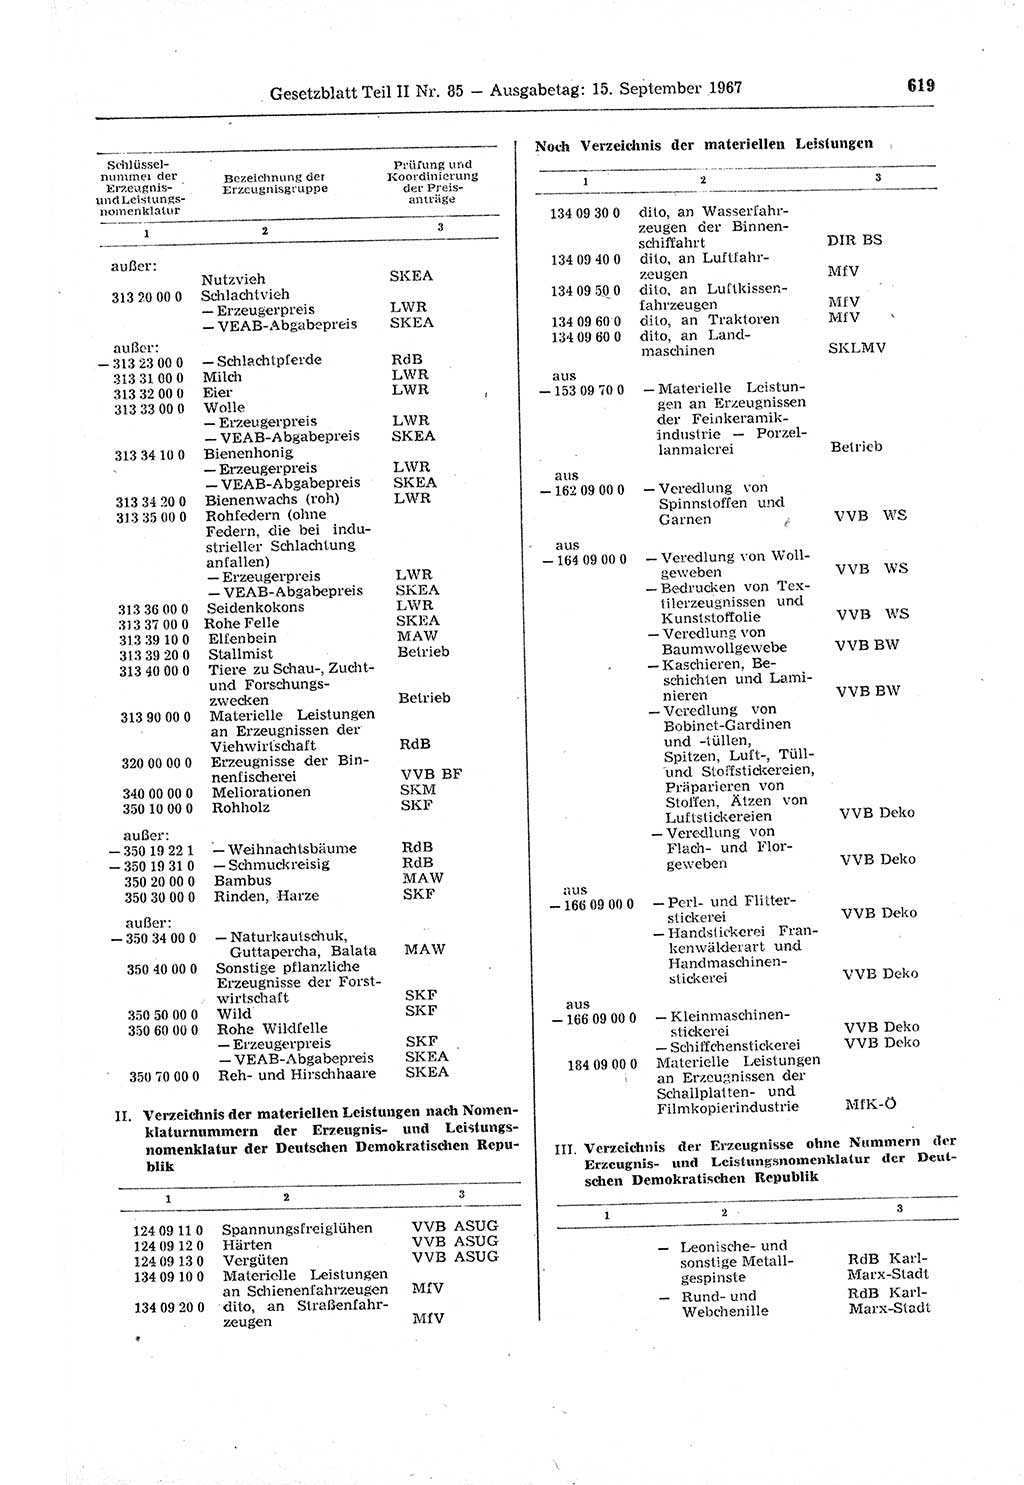 Gesetzblatt (GBl.) der Deutschen Demokratischen Republik (DDR) Teil ⅠⅠ 1967, Seite 619 (GBl. DDR ⅠⅠ 1967, S. 619)